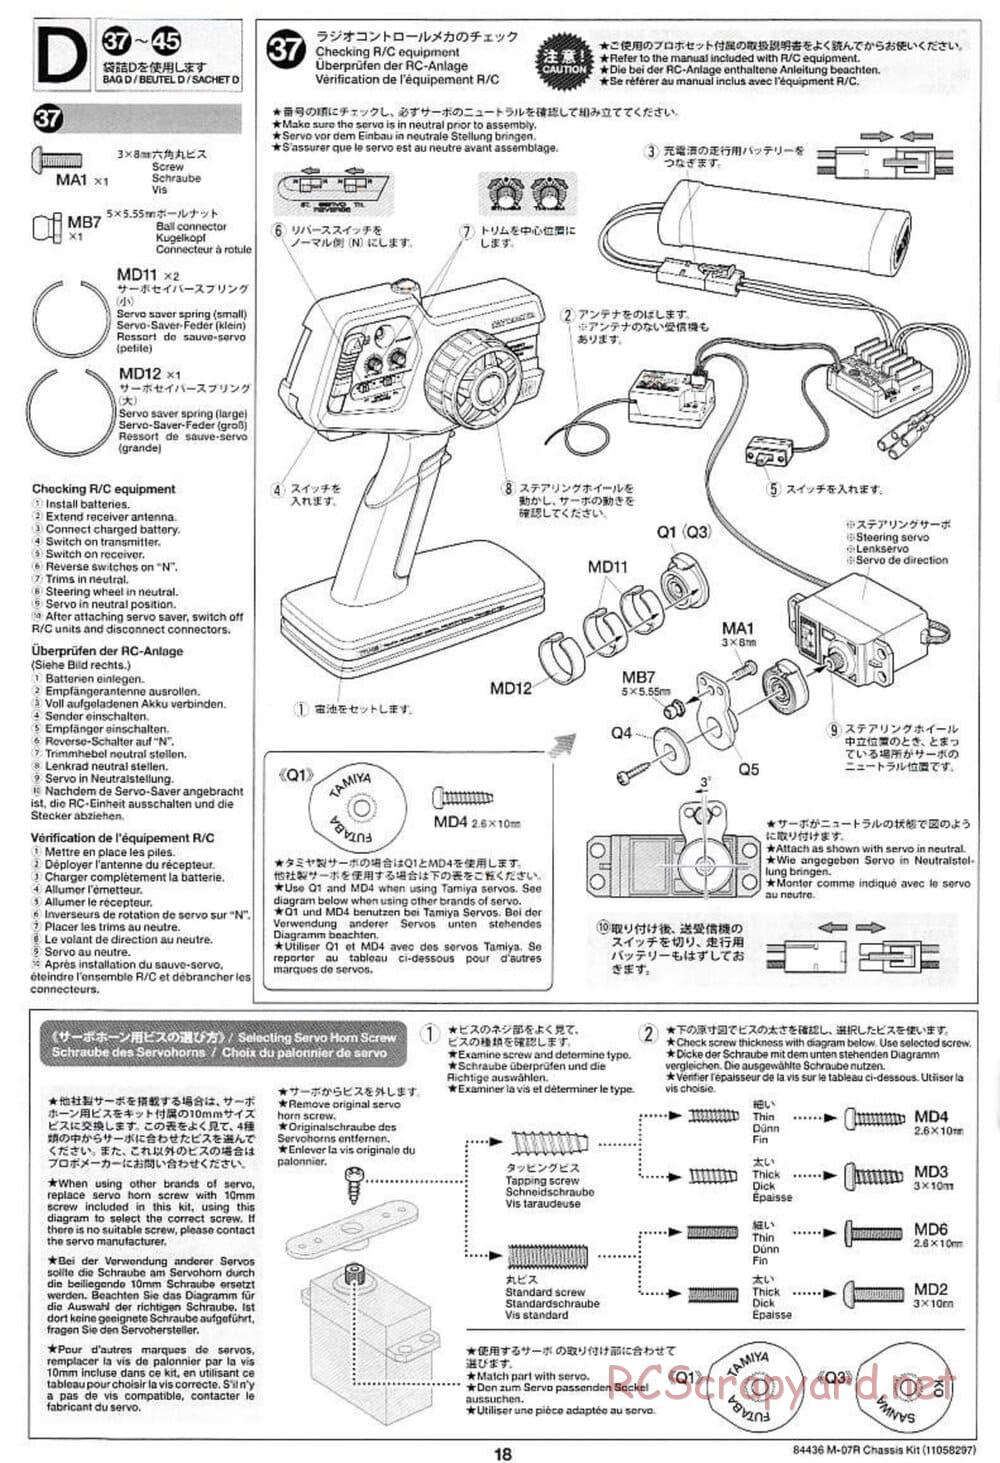 Tamiya - M-07R Chassis - Manual - Page 18